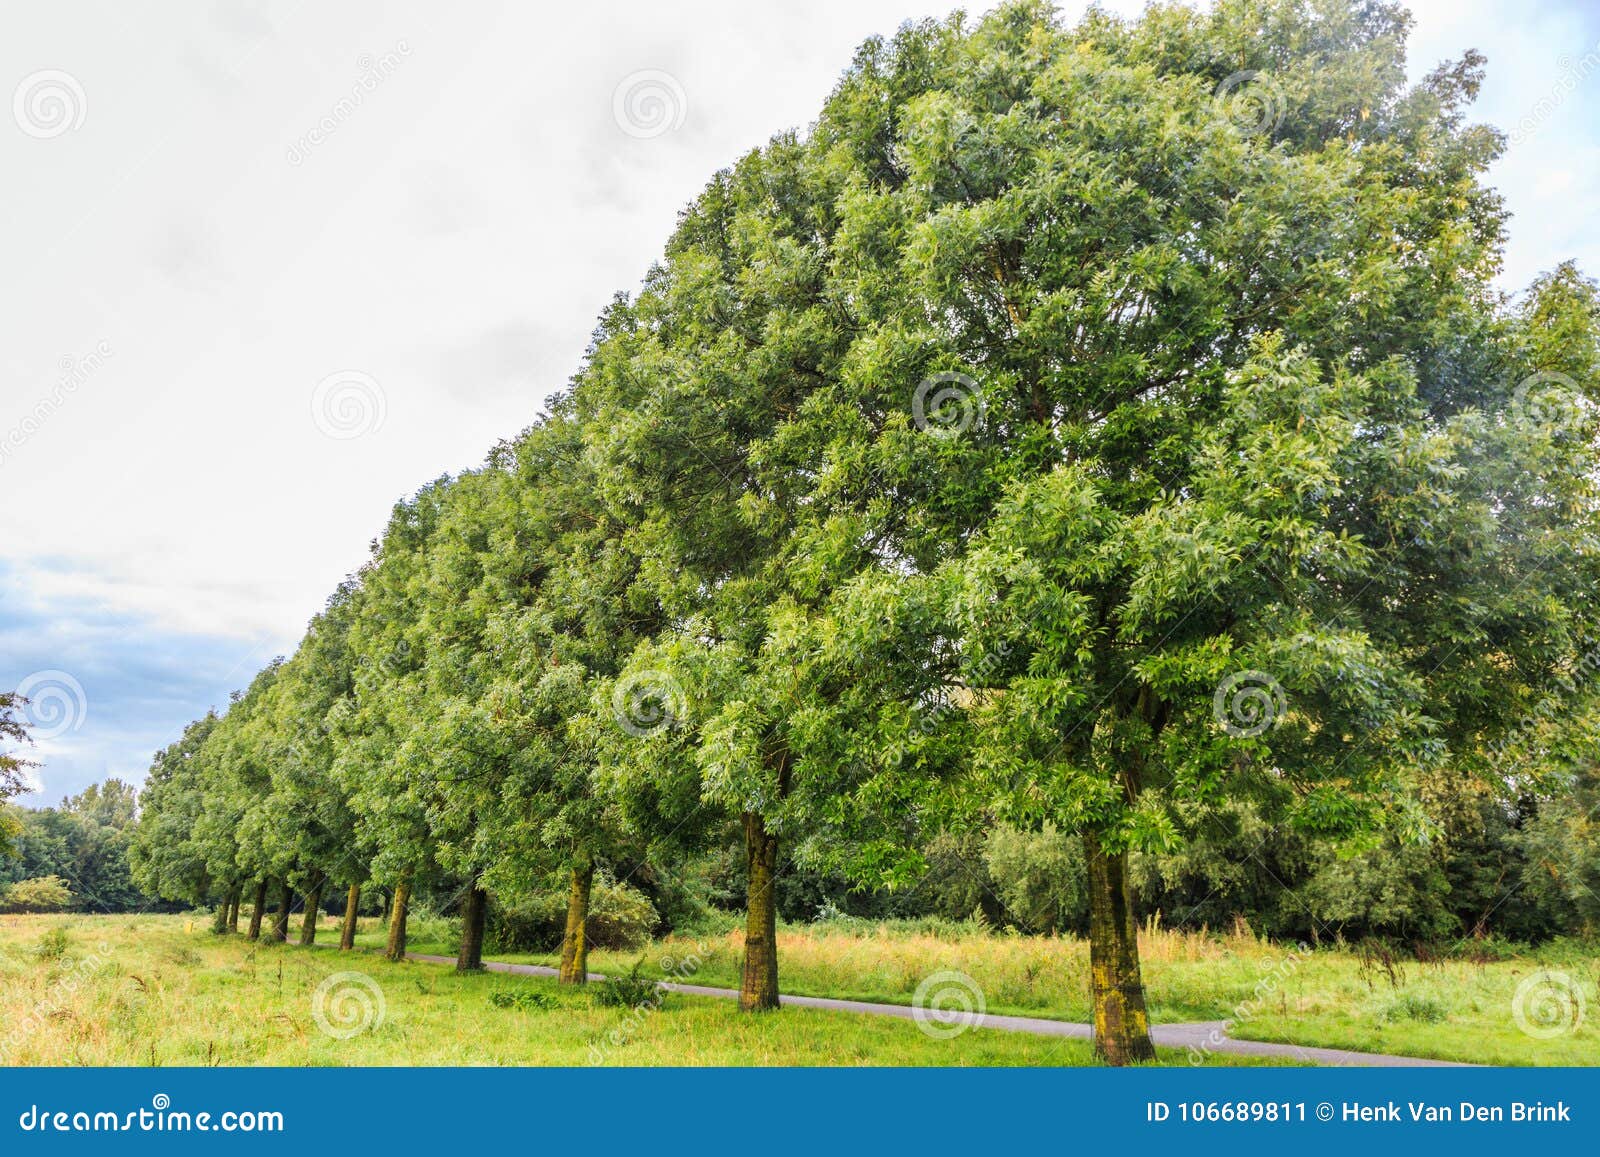 Hælde svinekød jorden Mature Ash Tree, Fraxinus Exelcior, As Avenue Planting in a Nature Park  Stock Image - Image of fraxinus, transparent: 106689811